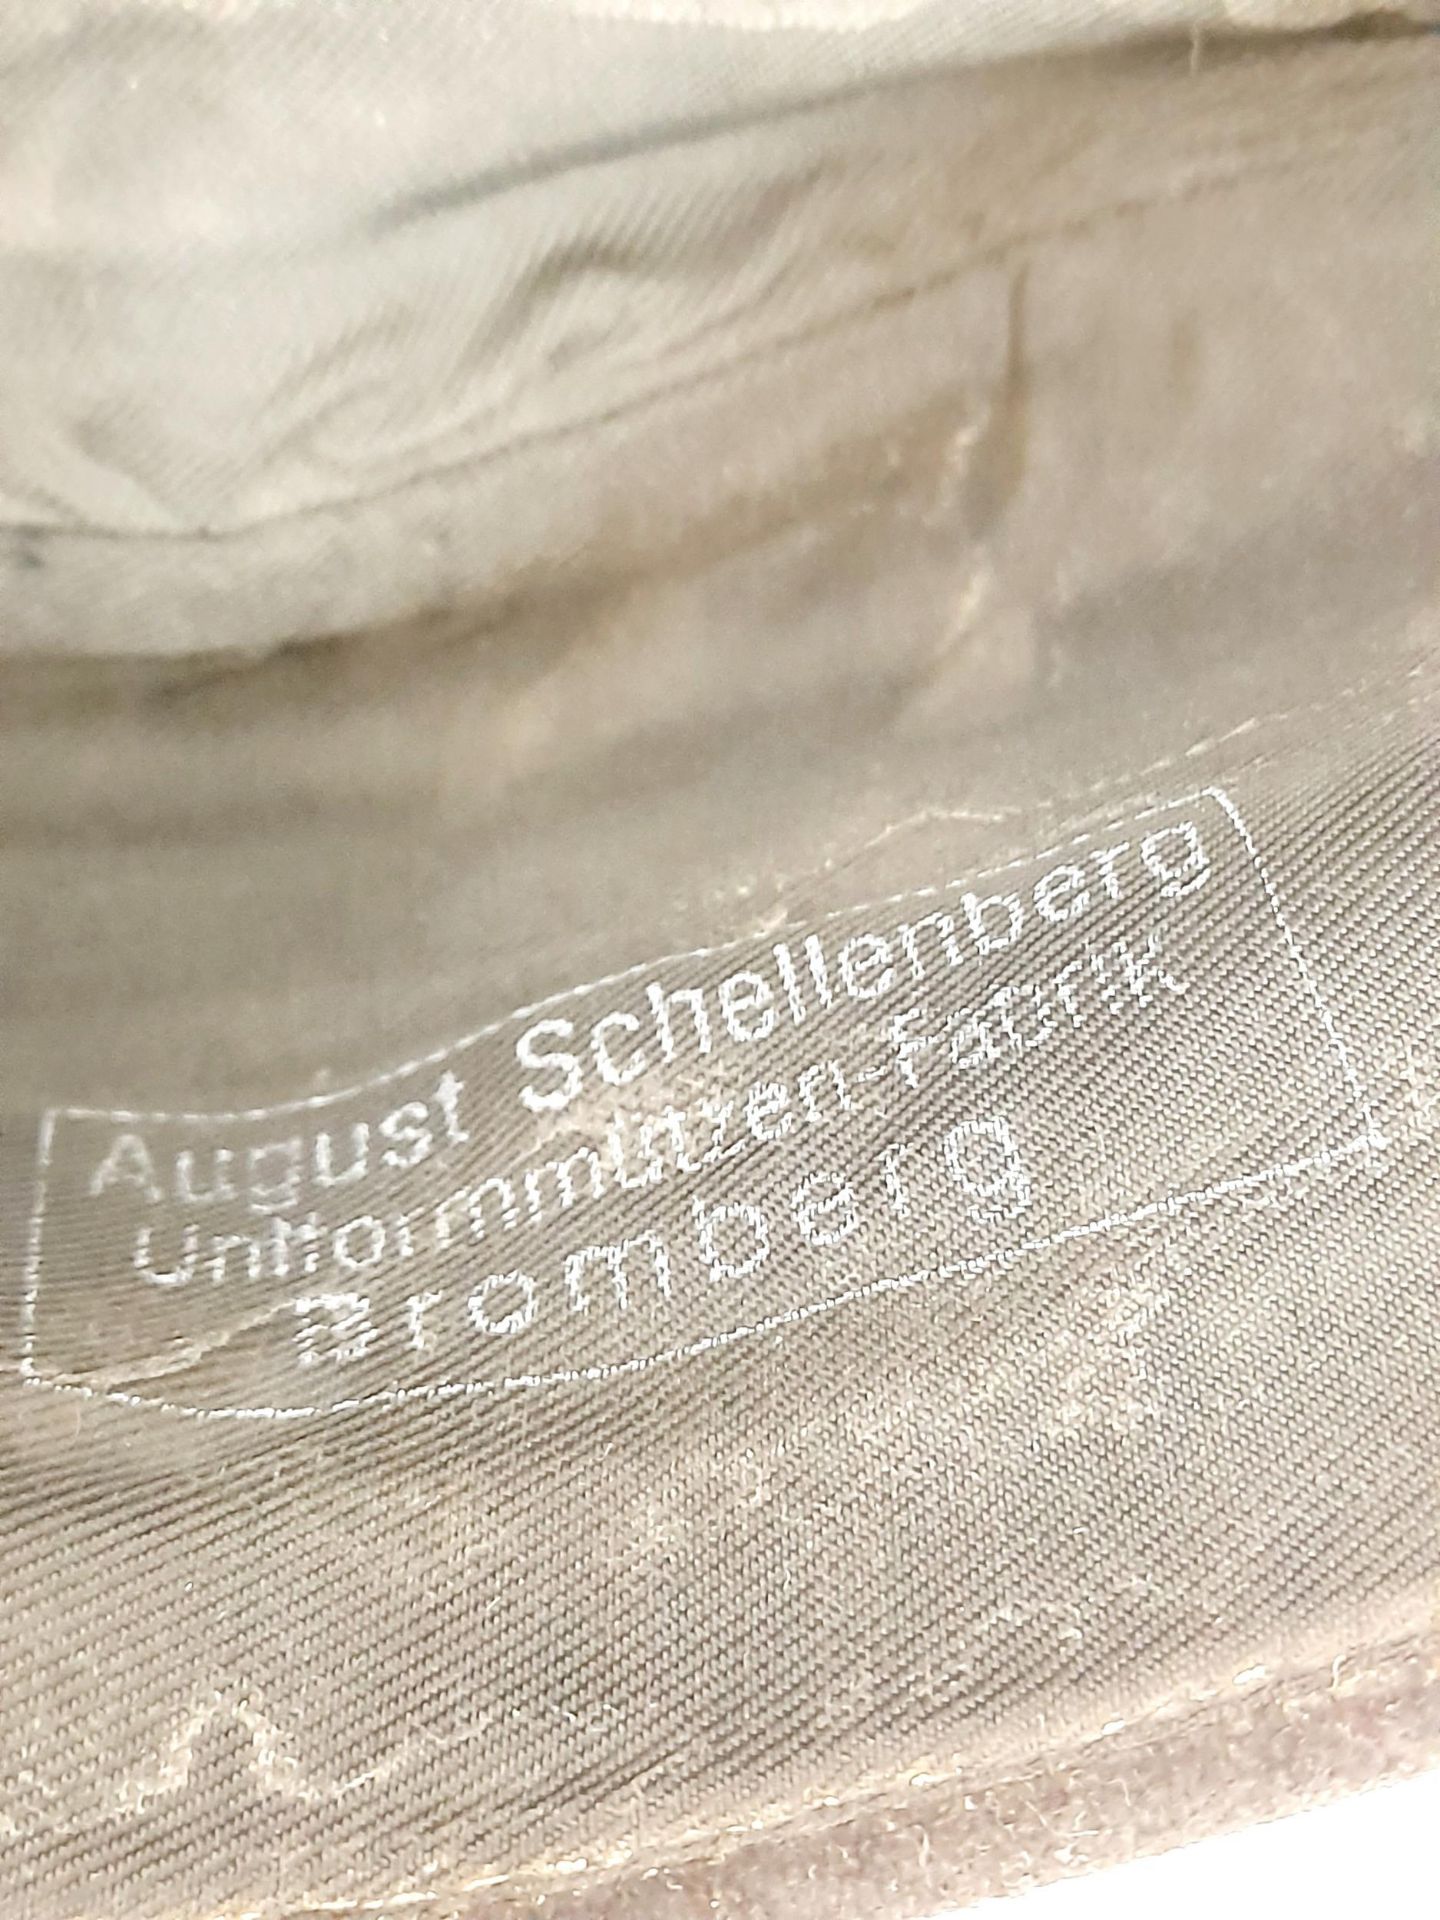 WW2 German Panzer Crew (pink soutache) Overseas Side Cap. Makers stamped “August Schellenberg” - Image 7 of 7